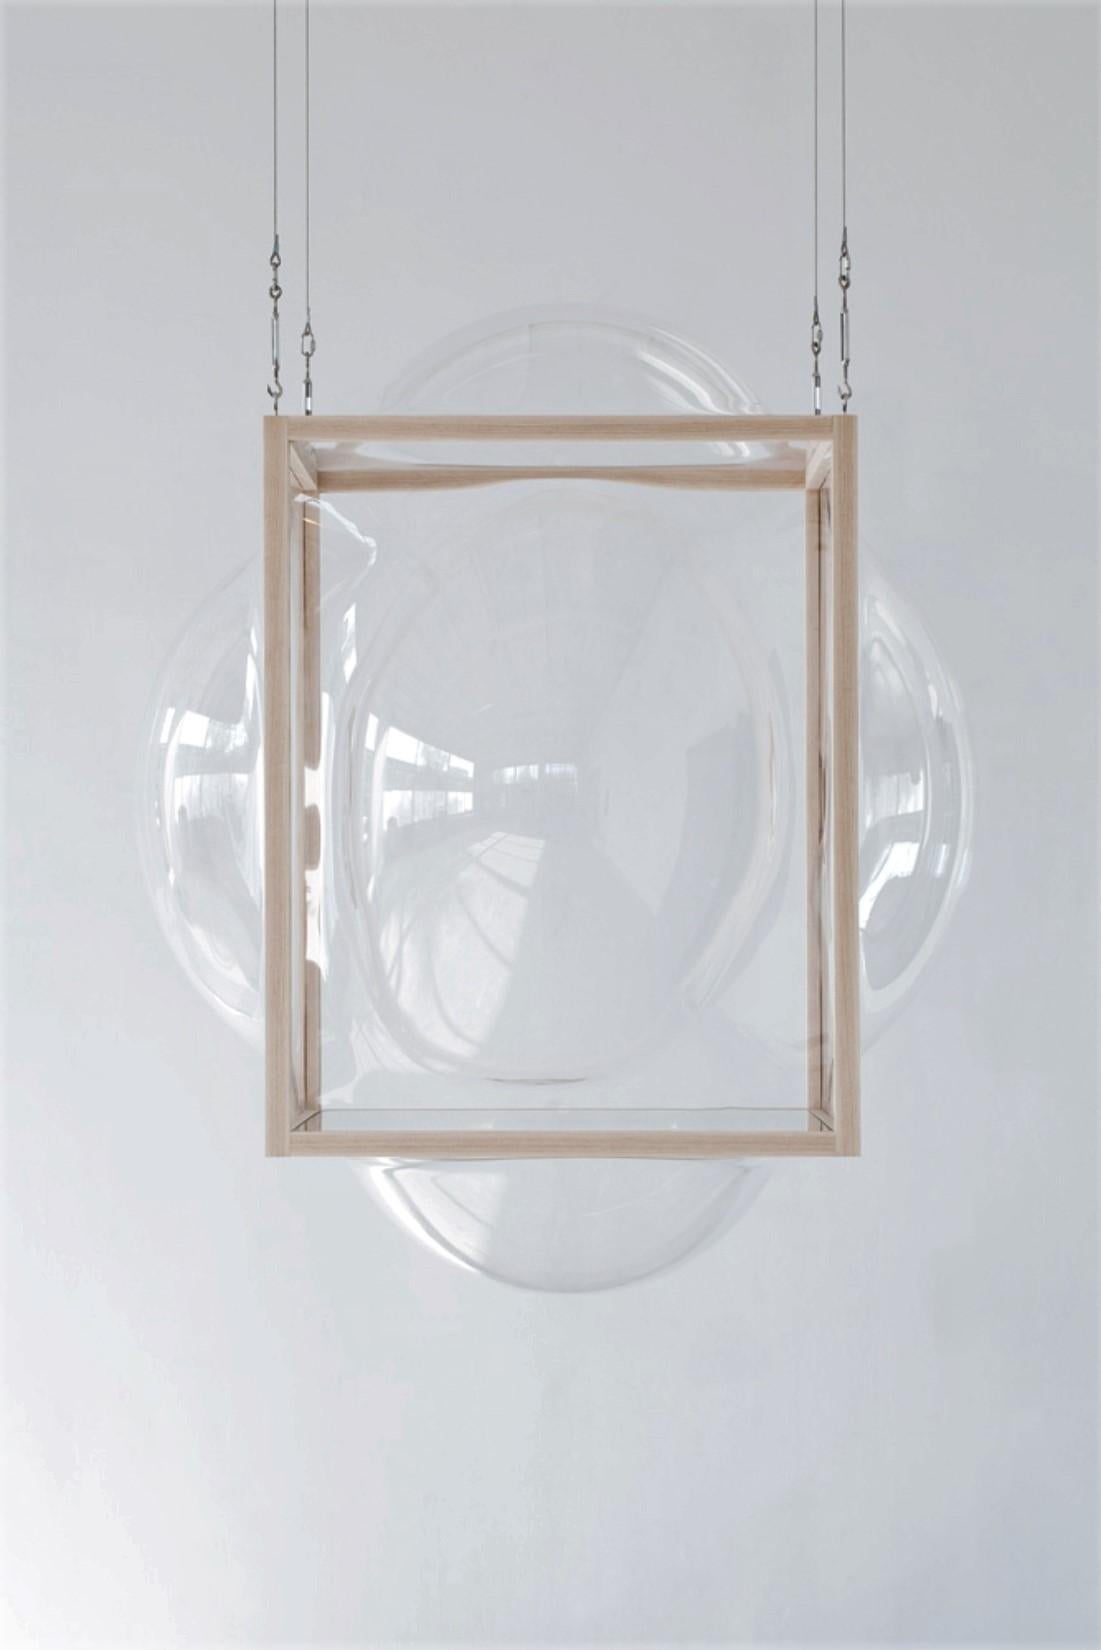 Grande armoire à bulles suspendue de Studio Thier & van Daalen
Dimensions : L 115 x D 115 x H 120 cm
MATERIAL : Frêne, verre acrylique, verre
Également disponible : Options supplémentaires disponibles

Ces bulles dans un cadre en bois égayent